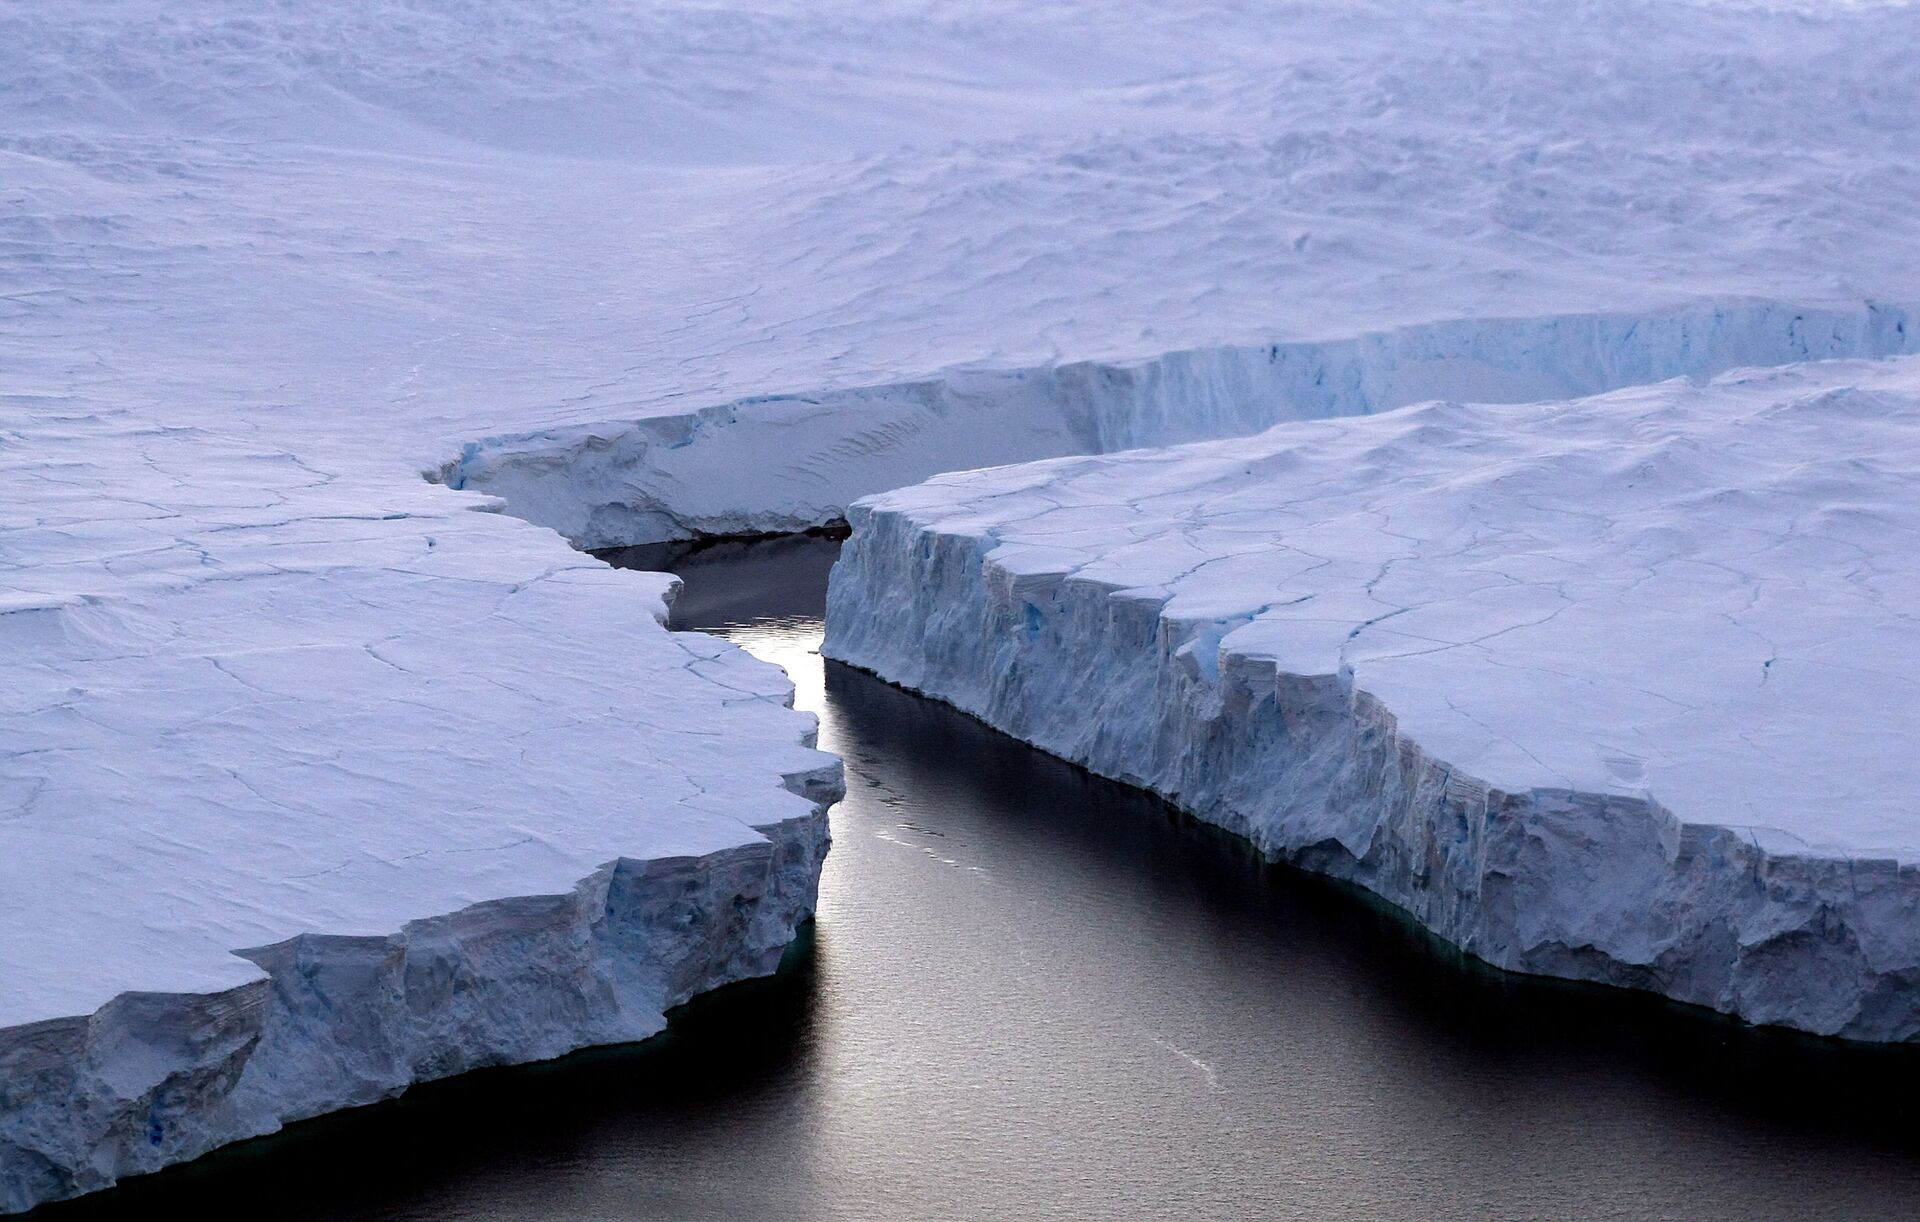 Recorde: Antártica registrou temperatura de 18,3 °C, confirma ONU - Sputnik Brasil, 1920, 02.07.2021